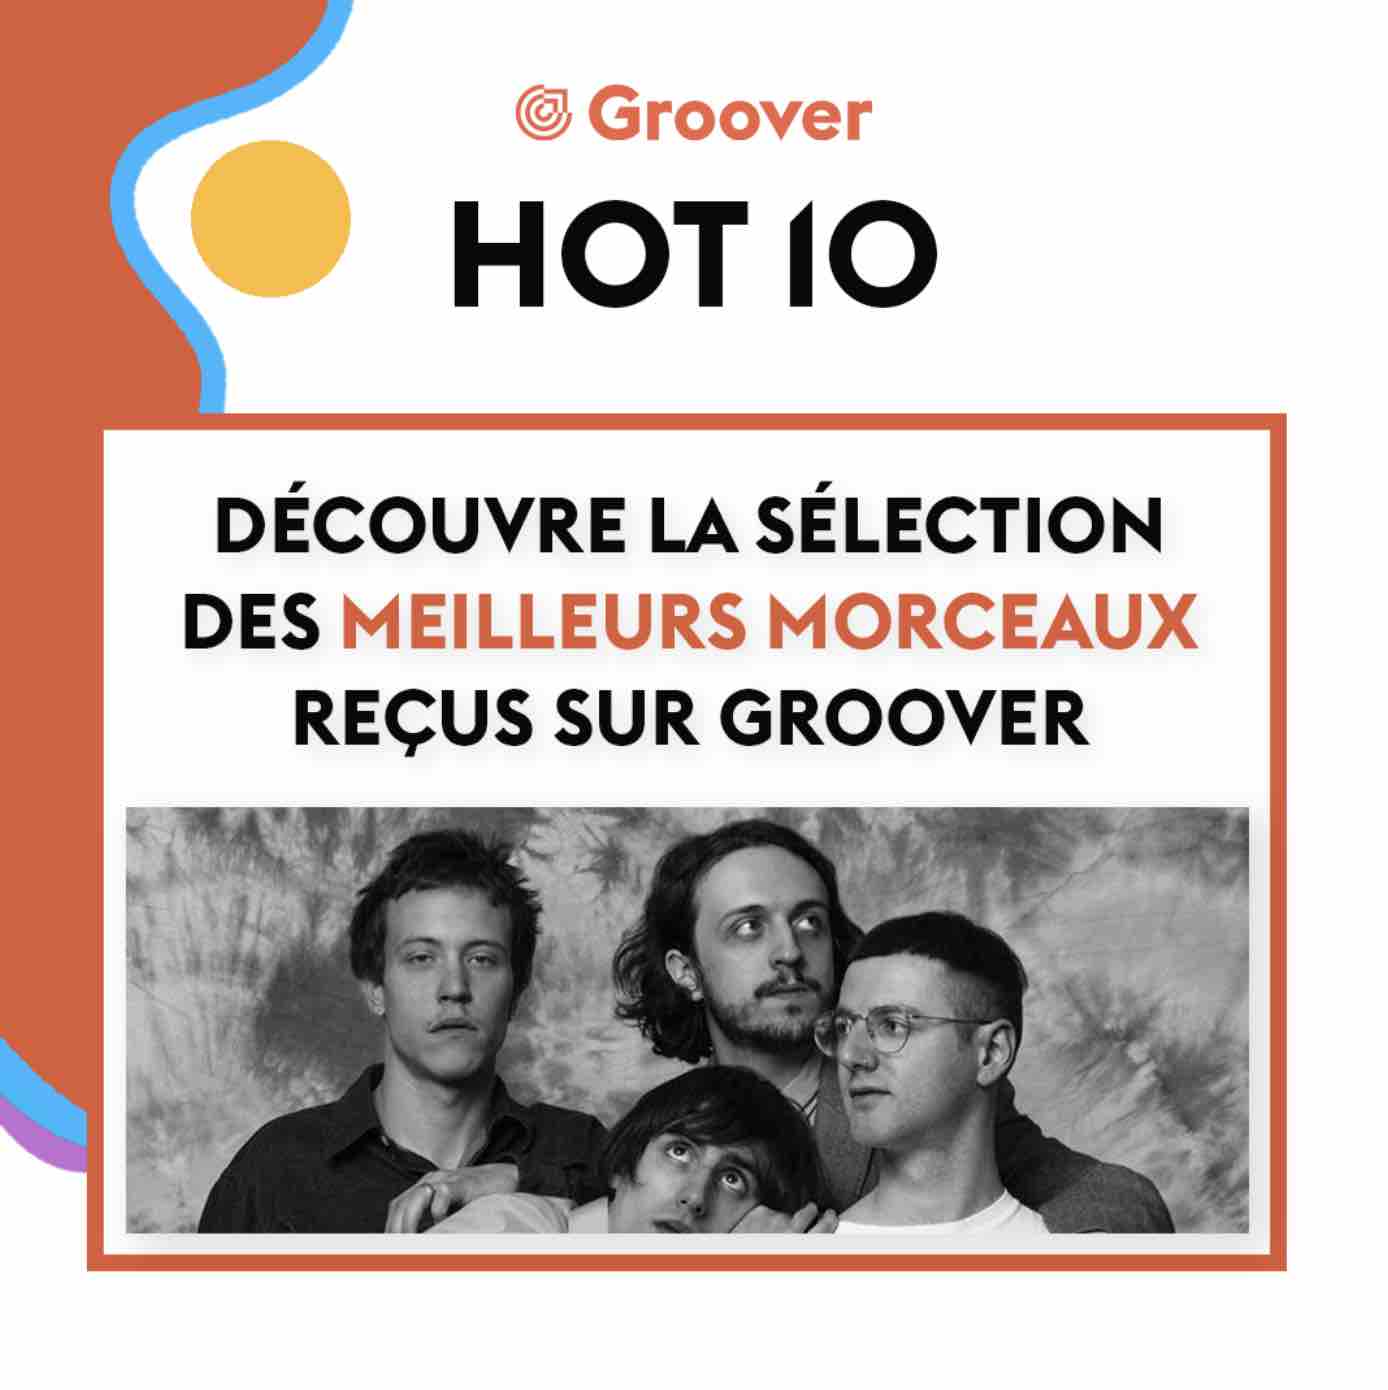 Playlist Groover HOT 10 - Découvre la sélection des meilleurs morceaux reçus sur Groover